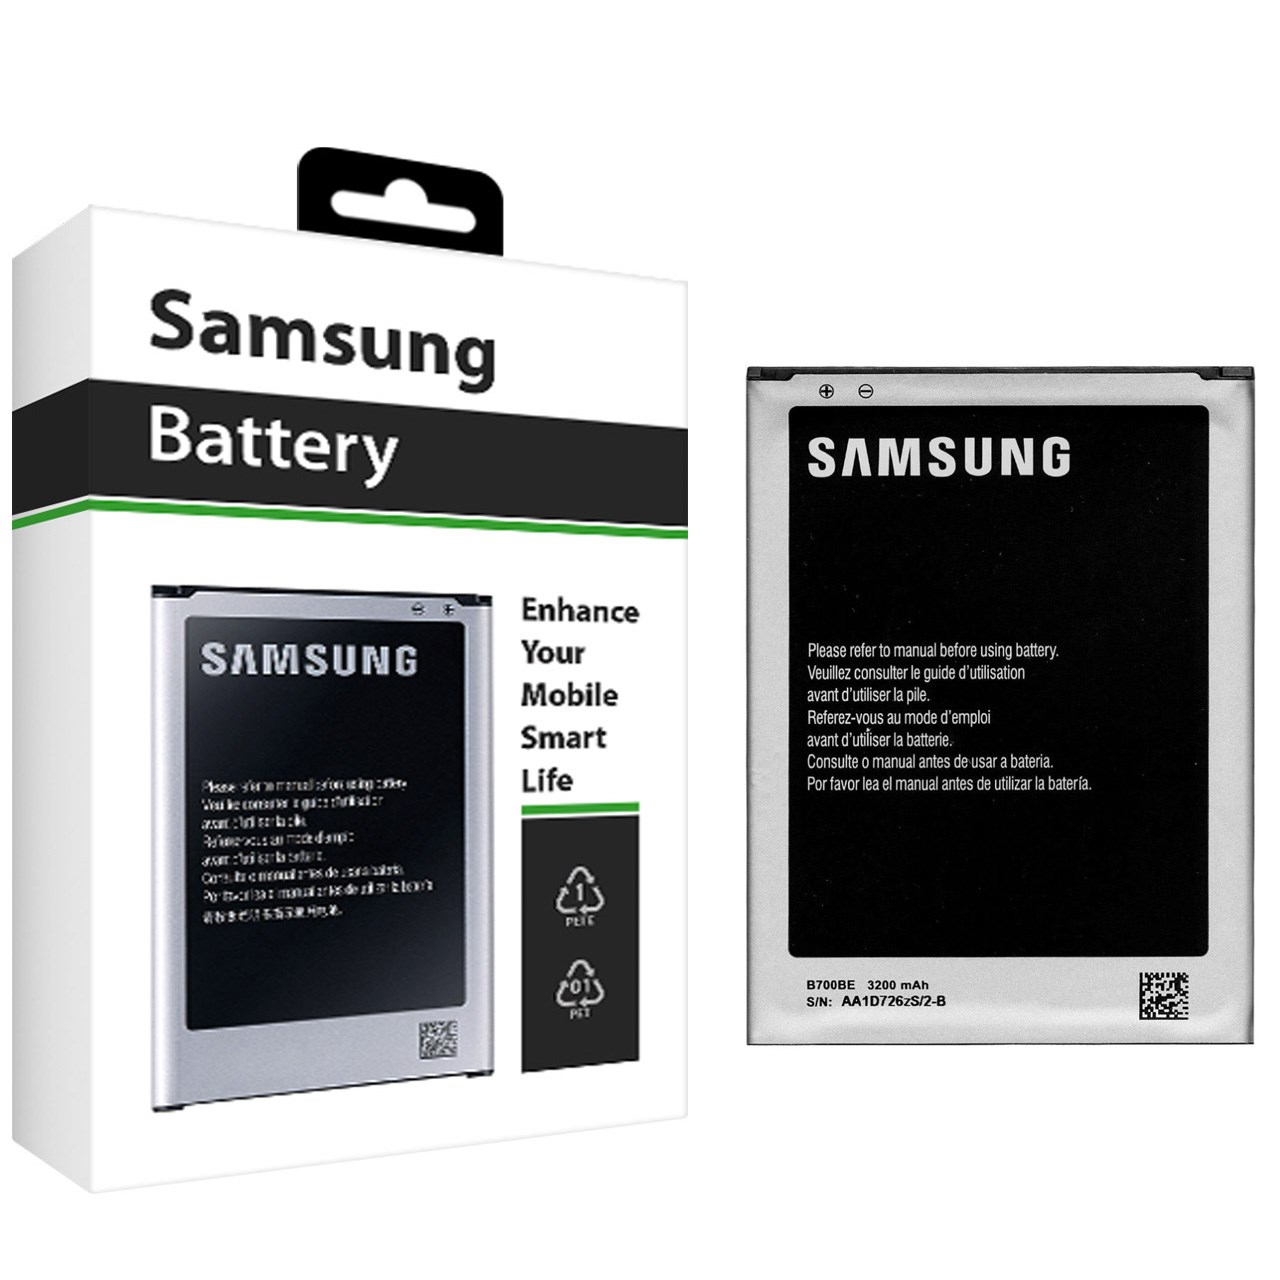 باتری موبایل سامسونگ مدل B700BE با ظرفیت 3200mAh مناسب برای گوشی موبایل سامسونگ Galaxy Mega 6.3 i9200